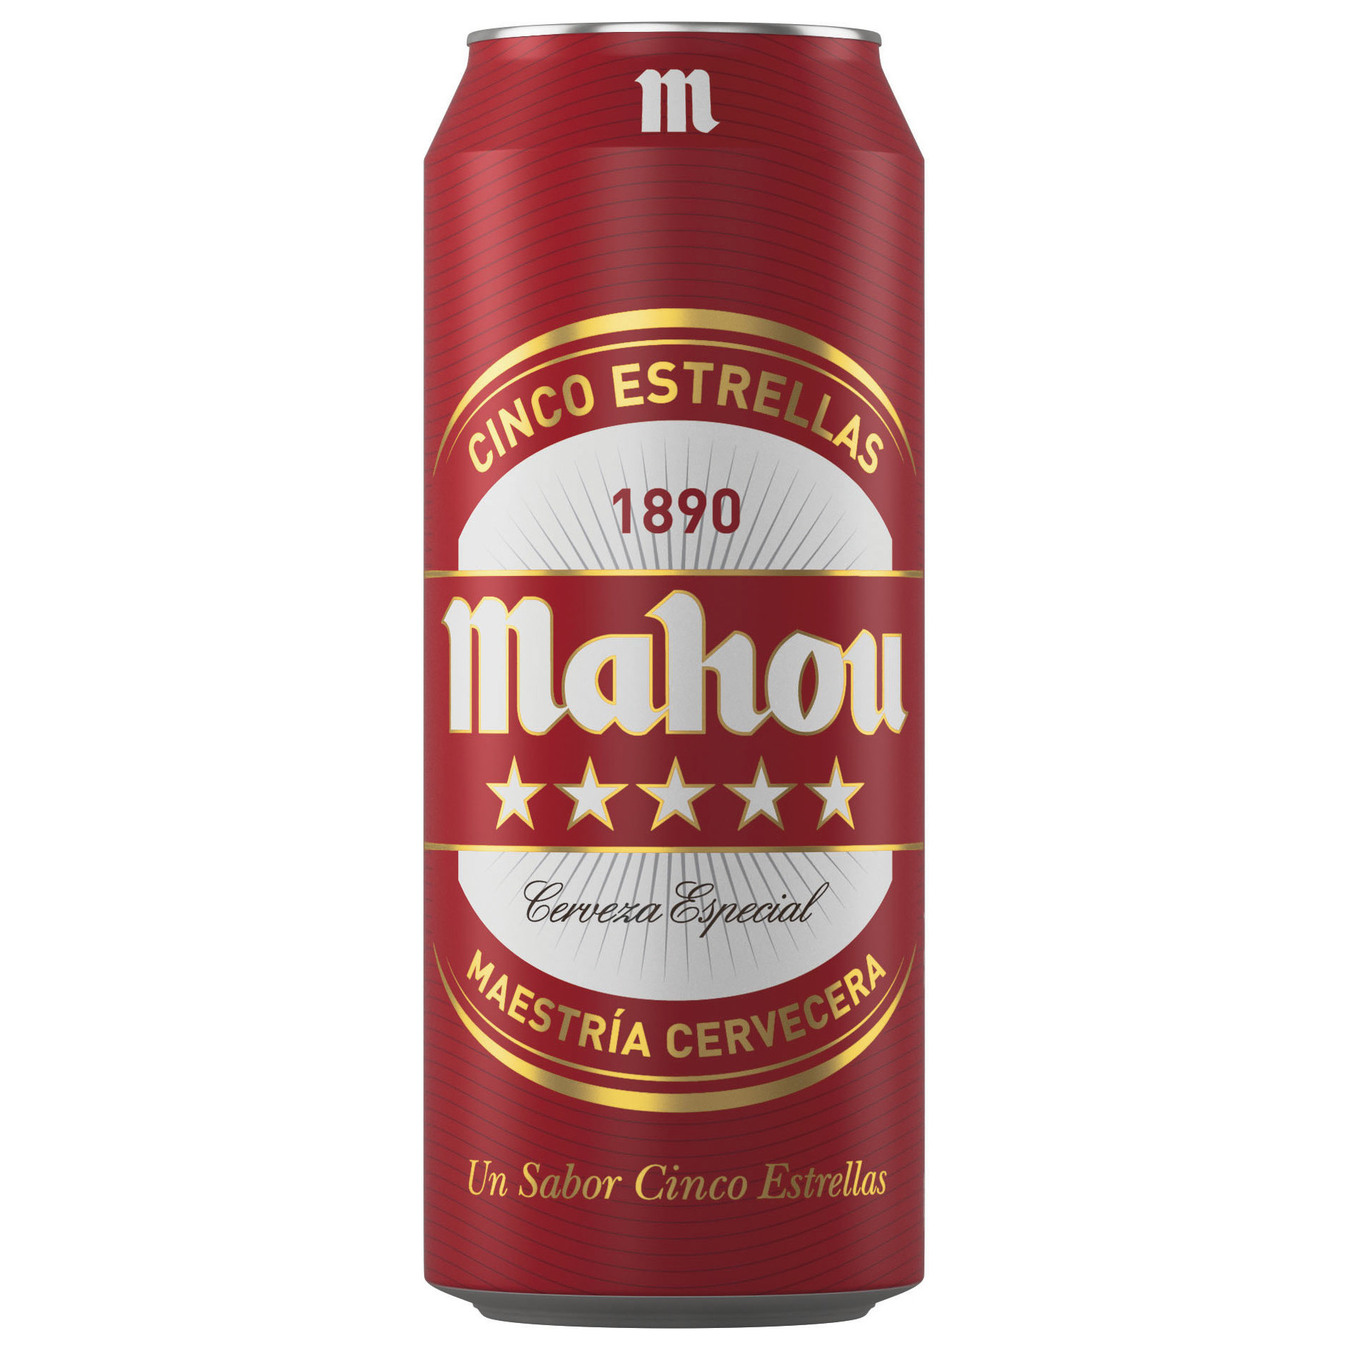 Light beer Mahou 5 estrellas 5.5% 0.5 l iron can